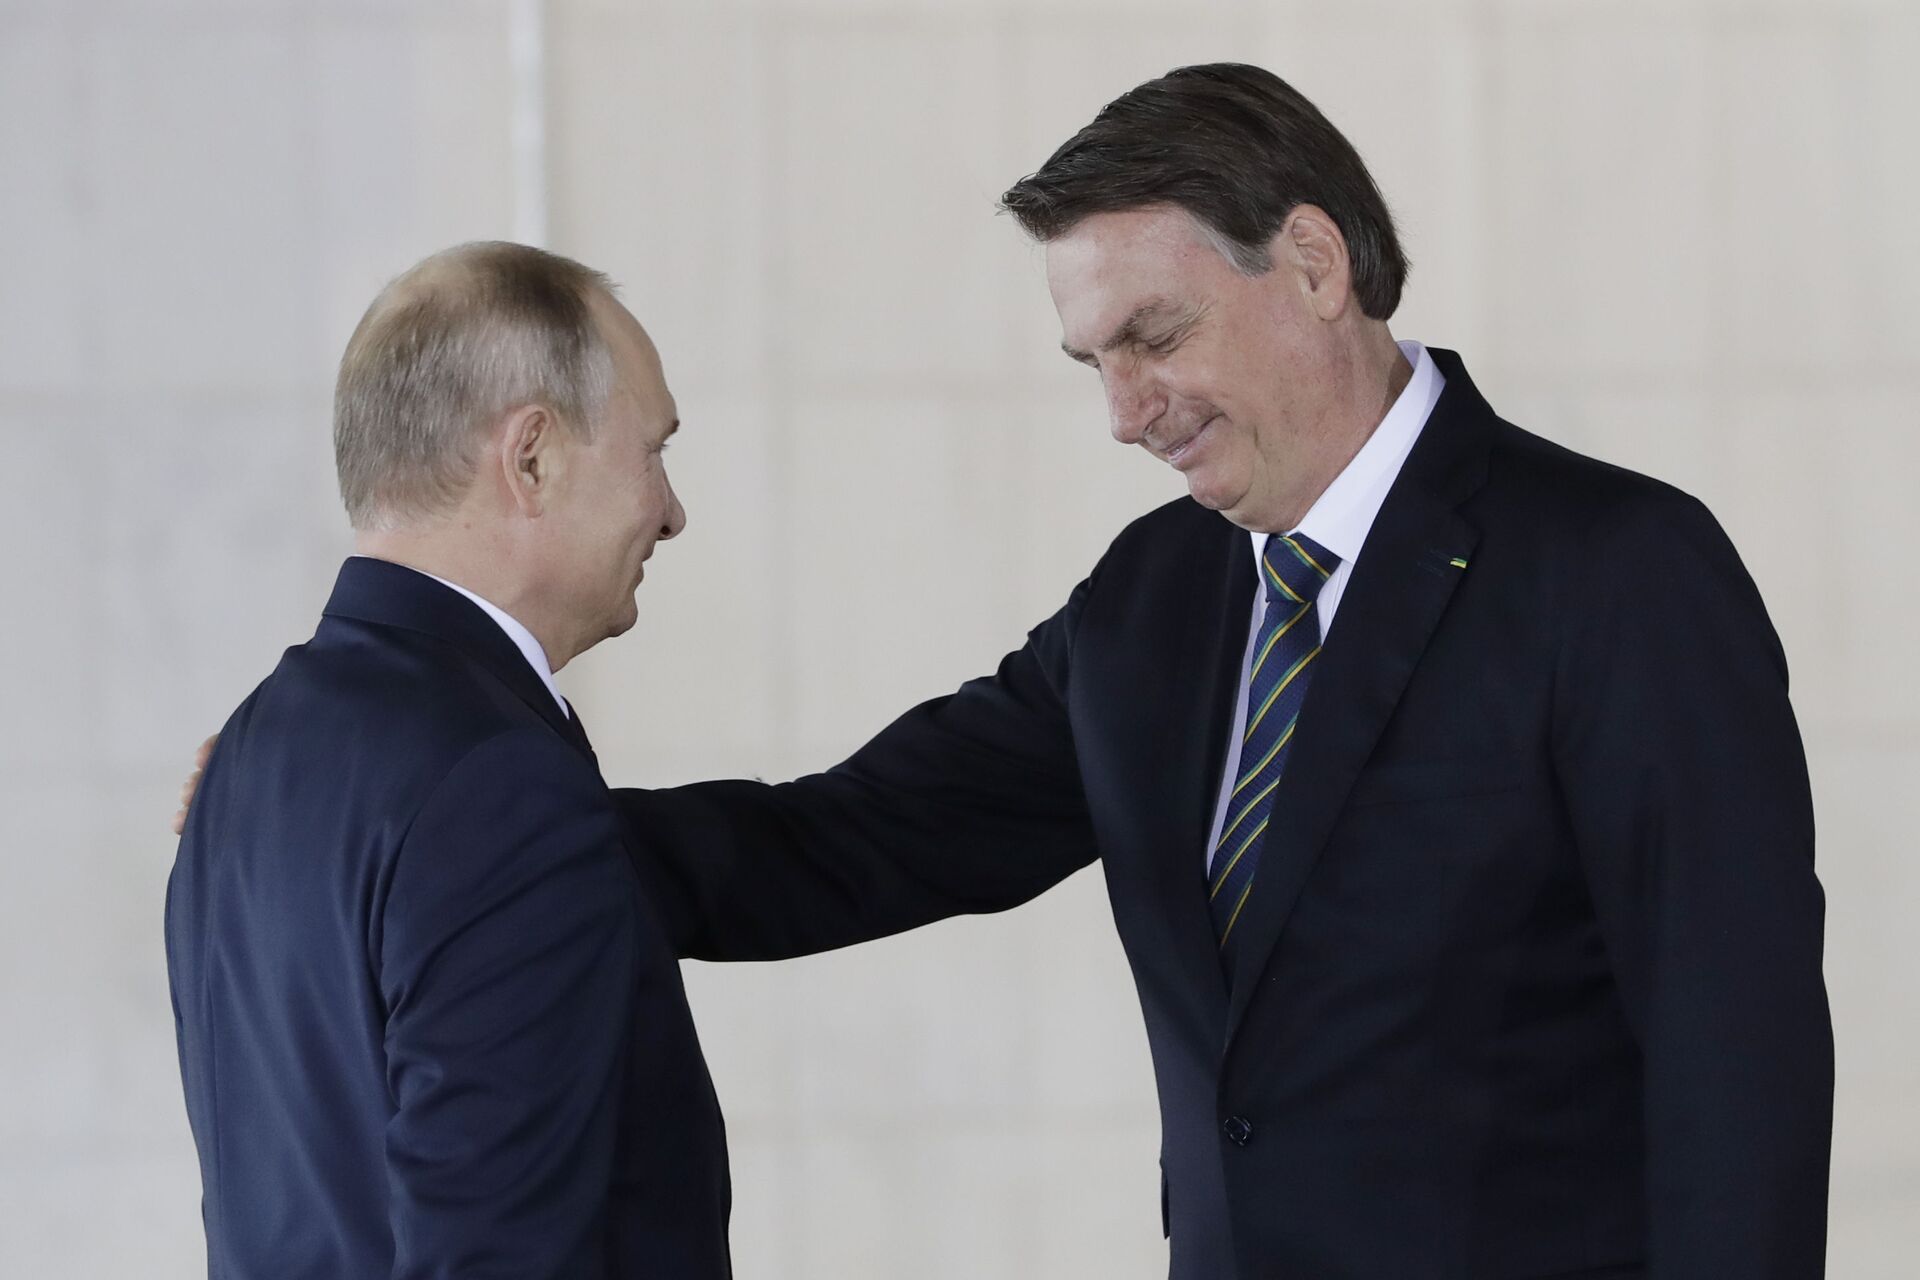 Conversa de Bolsonaro e Putin indica que Brasil possa ter mudado política externa, dizem analistas - Sputnik Brasil, 1920, 06.04.2021